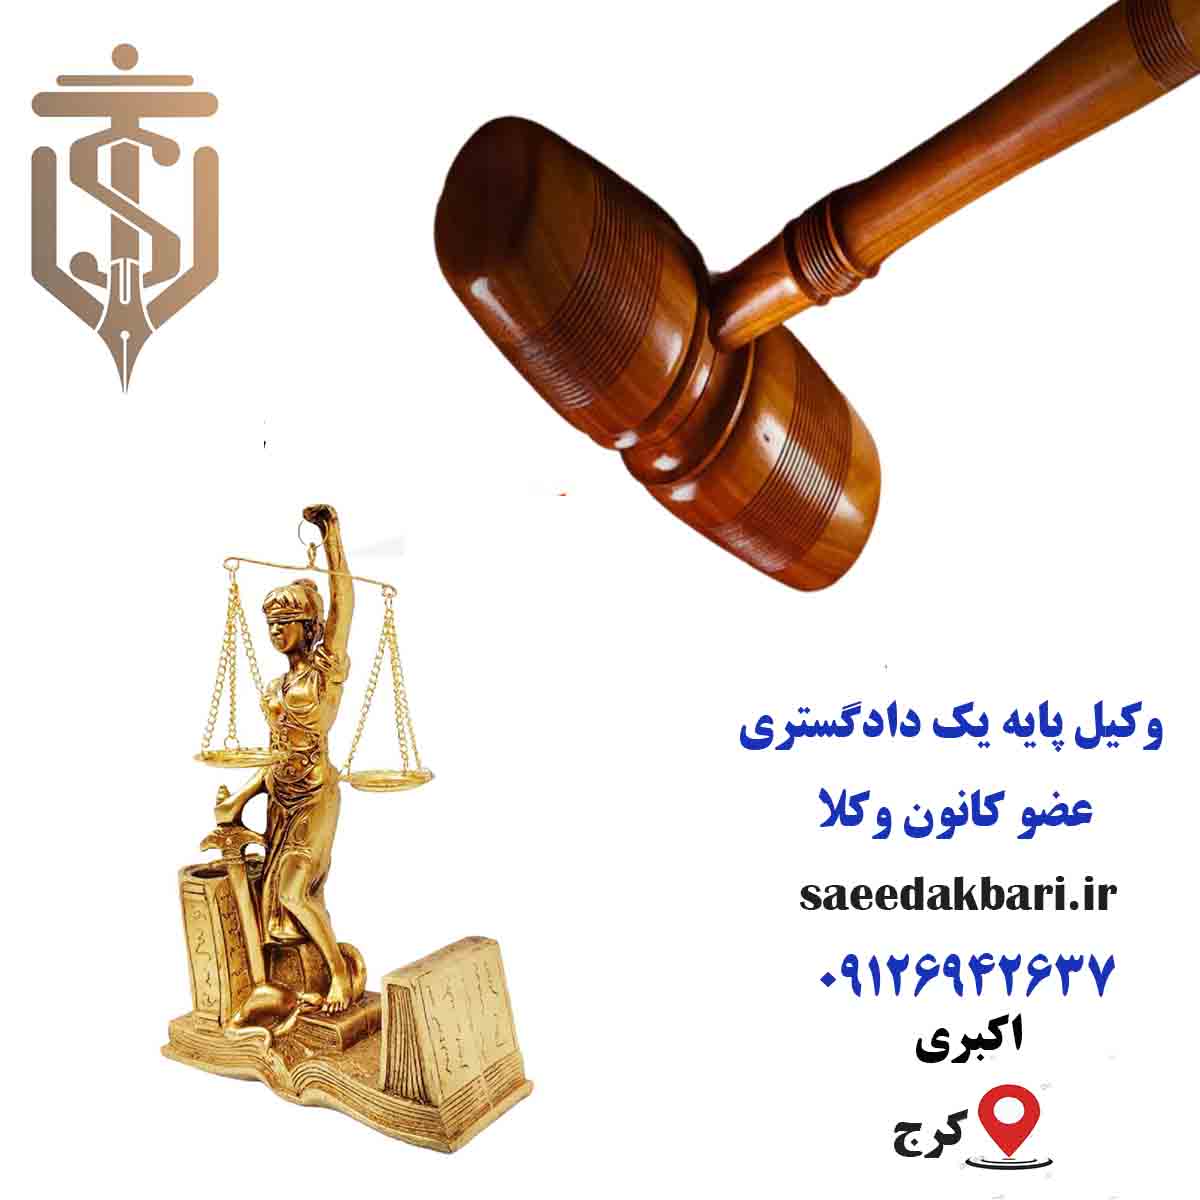 وکیل پایه یک دادگستری | مشاوره حقوقی در کرج | اکبری